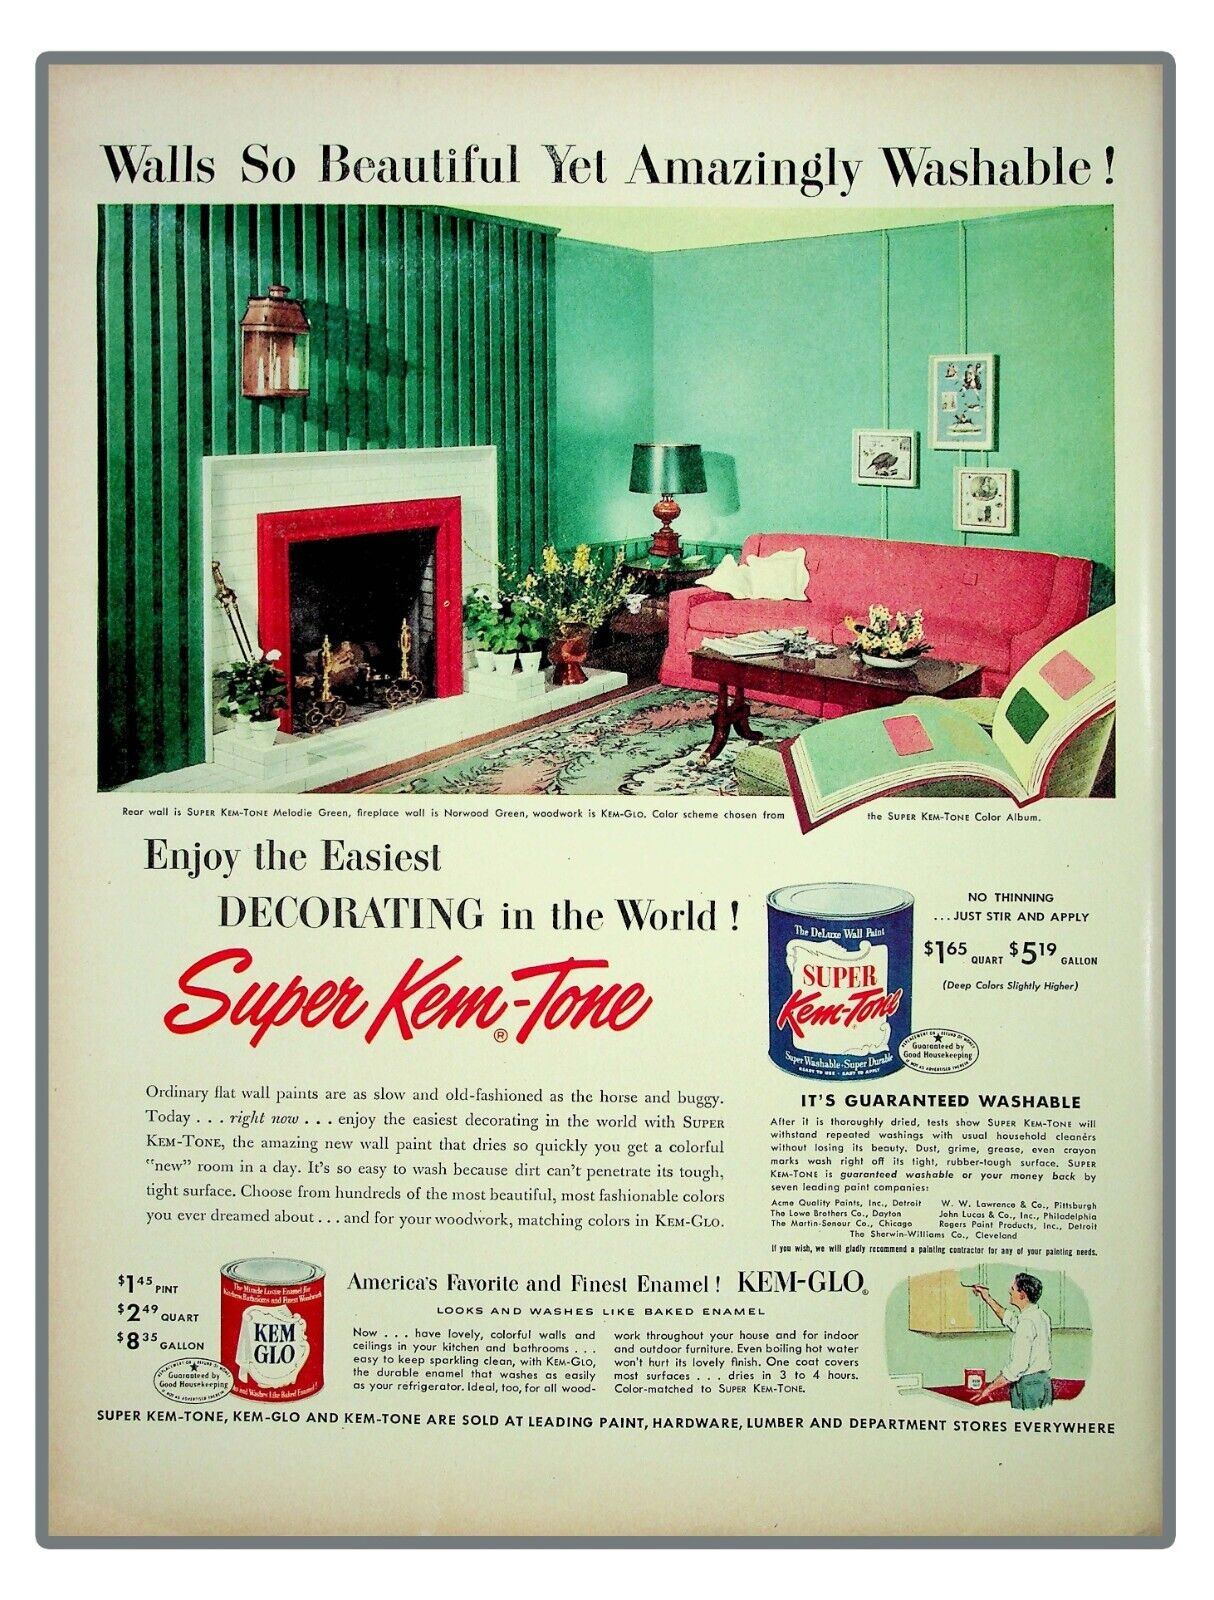 Super Kem Tone Paint Fireplace 1952 Vintage Print Ad